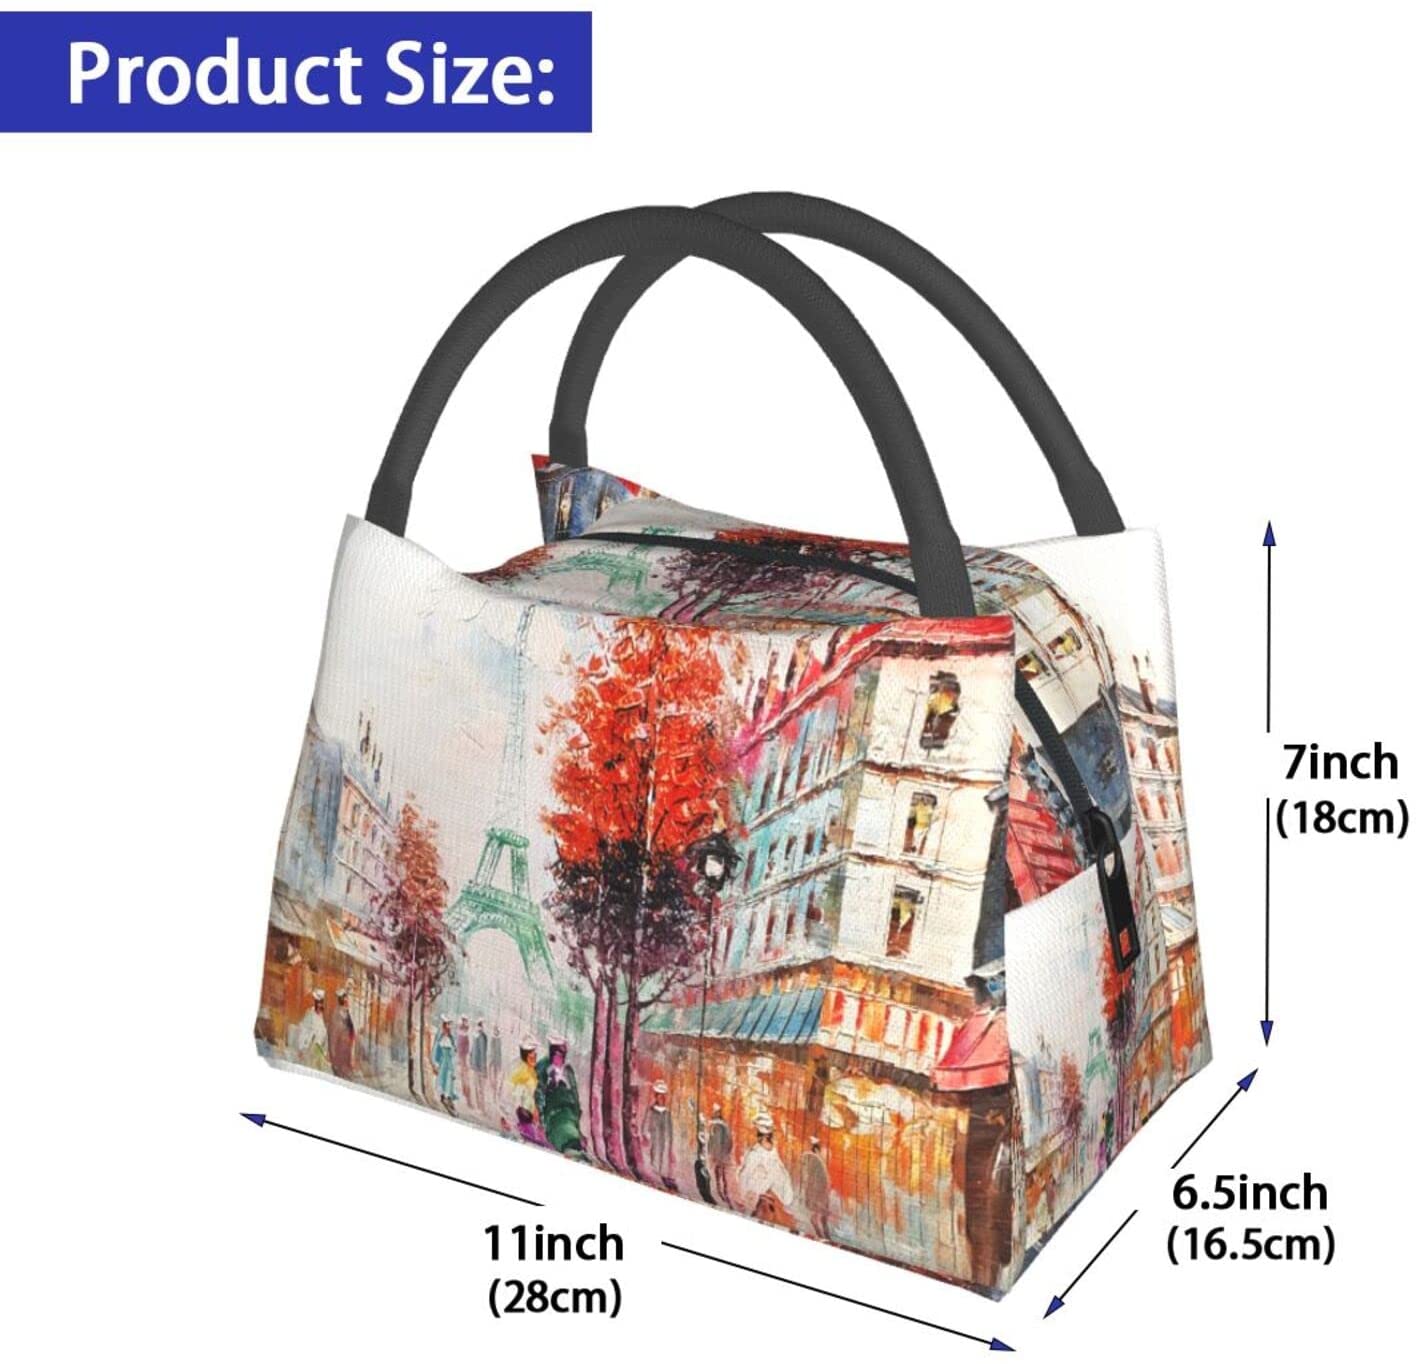 REALER brand 3 pcs printed handbag women large tote bag artificial leather shoulder messenger